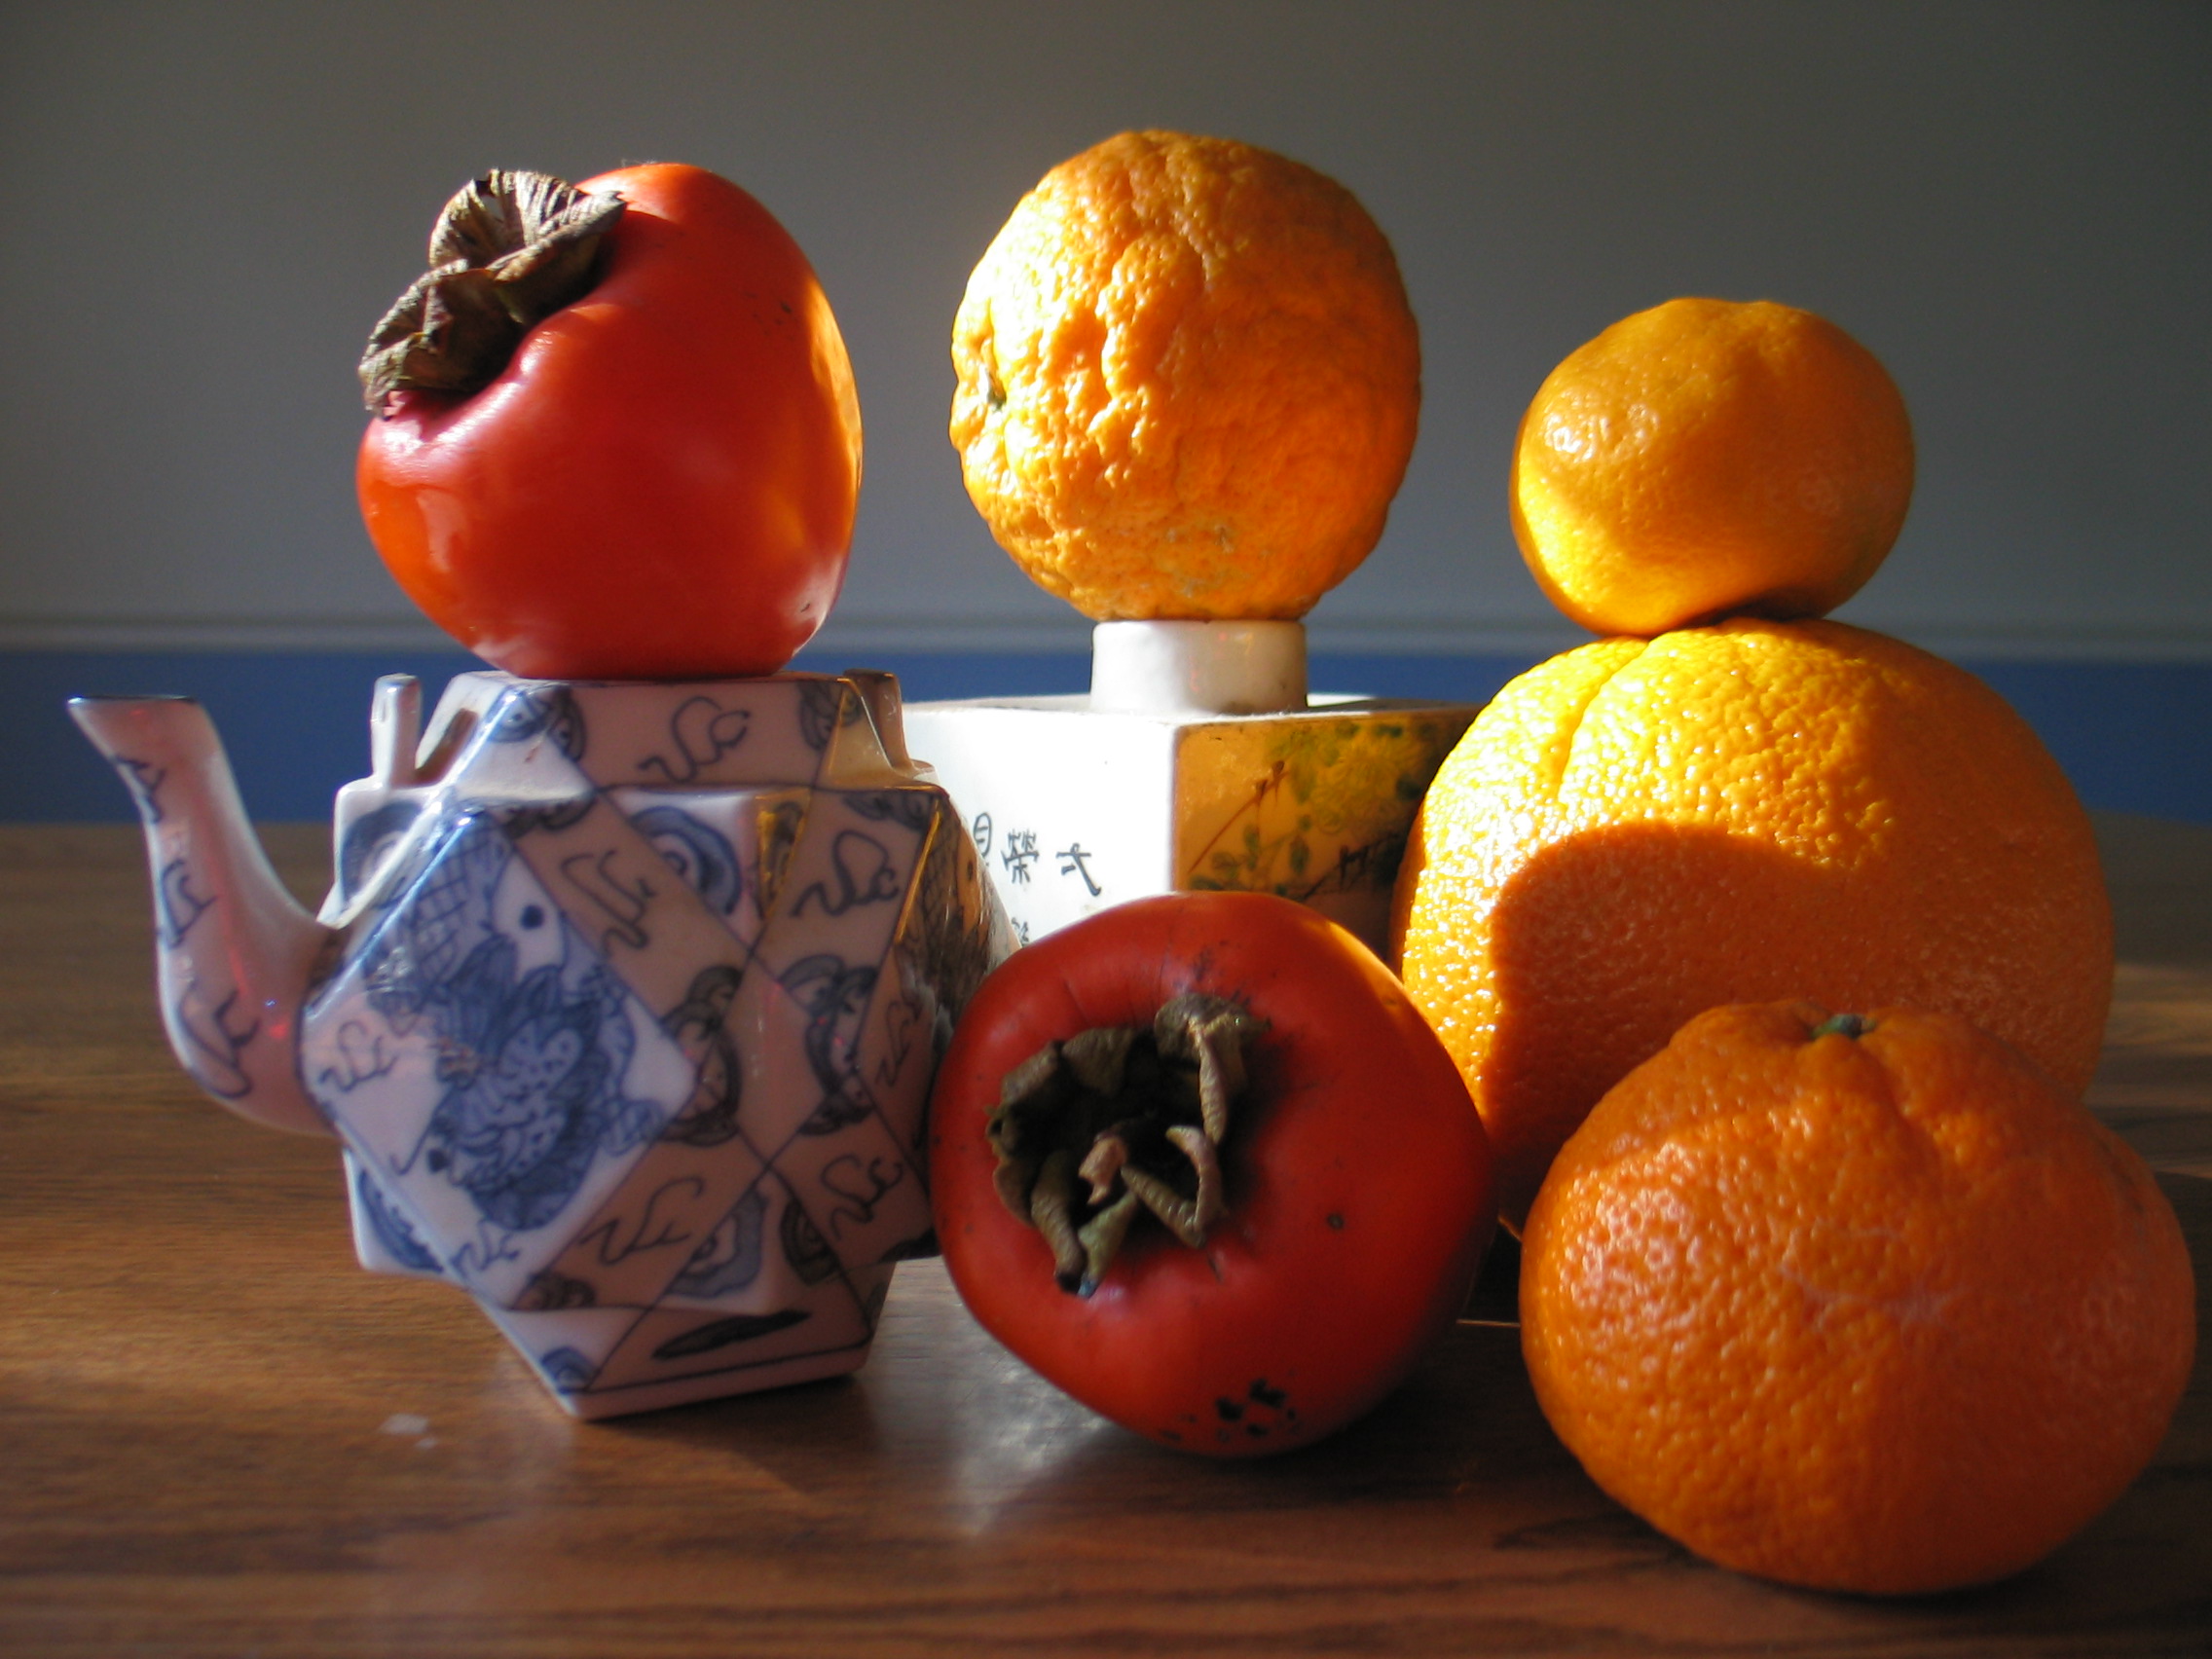  Mandarins and persimmons. 